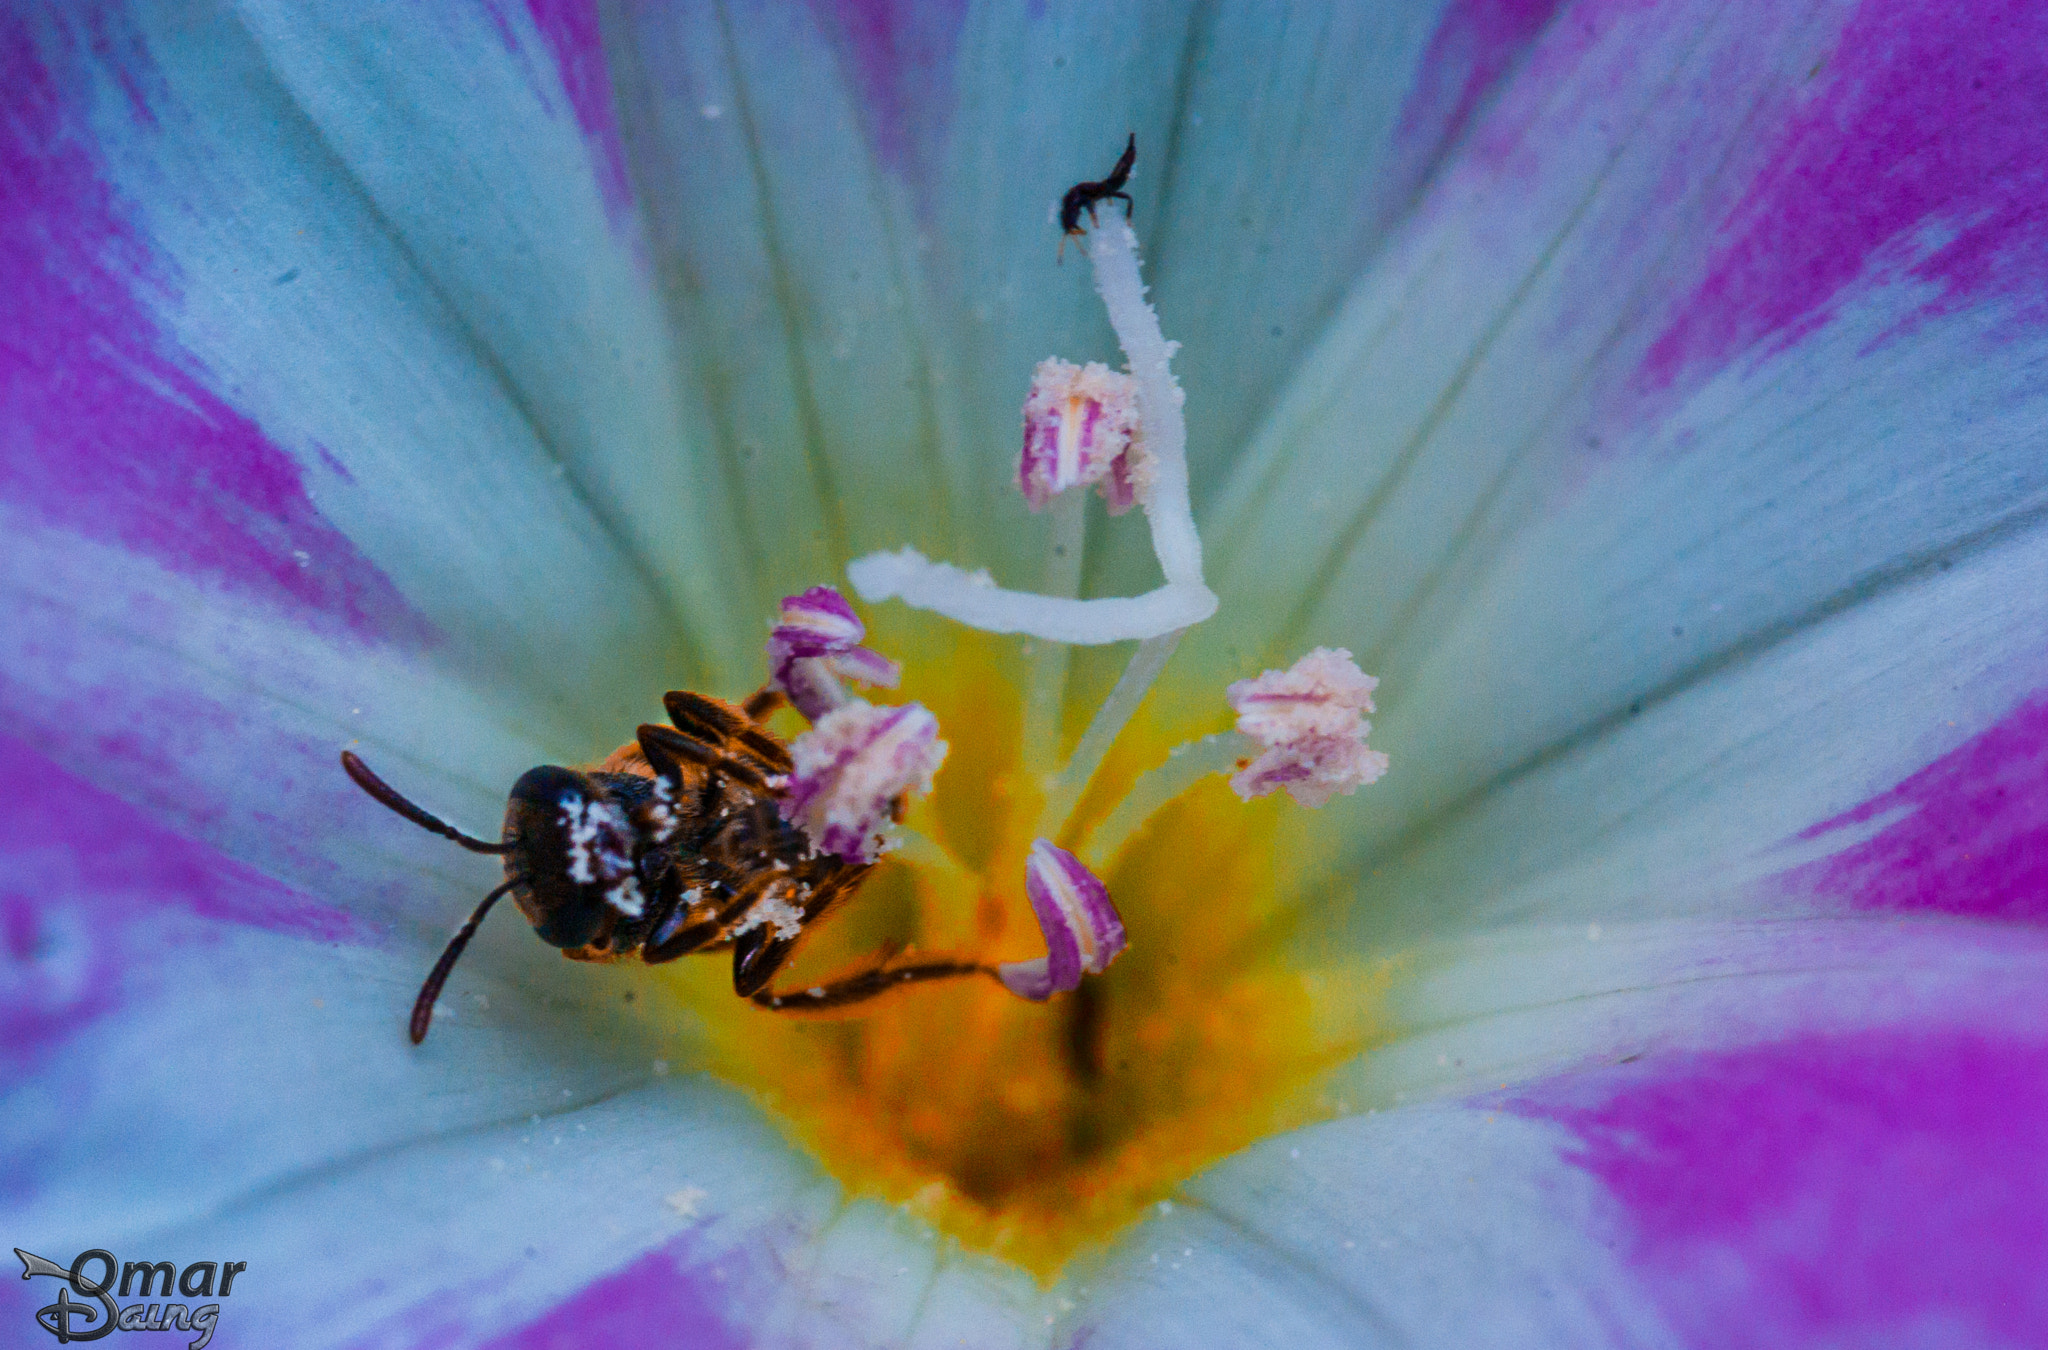 Pentax K10D sample photo. Insects and flowers - Çiçek ve böcek photography